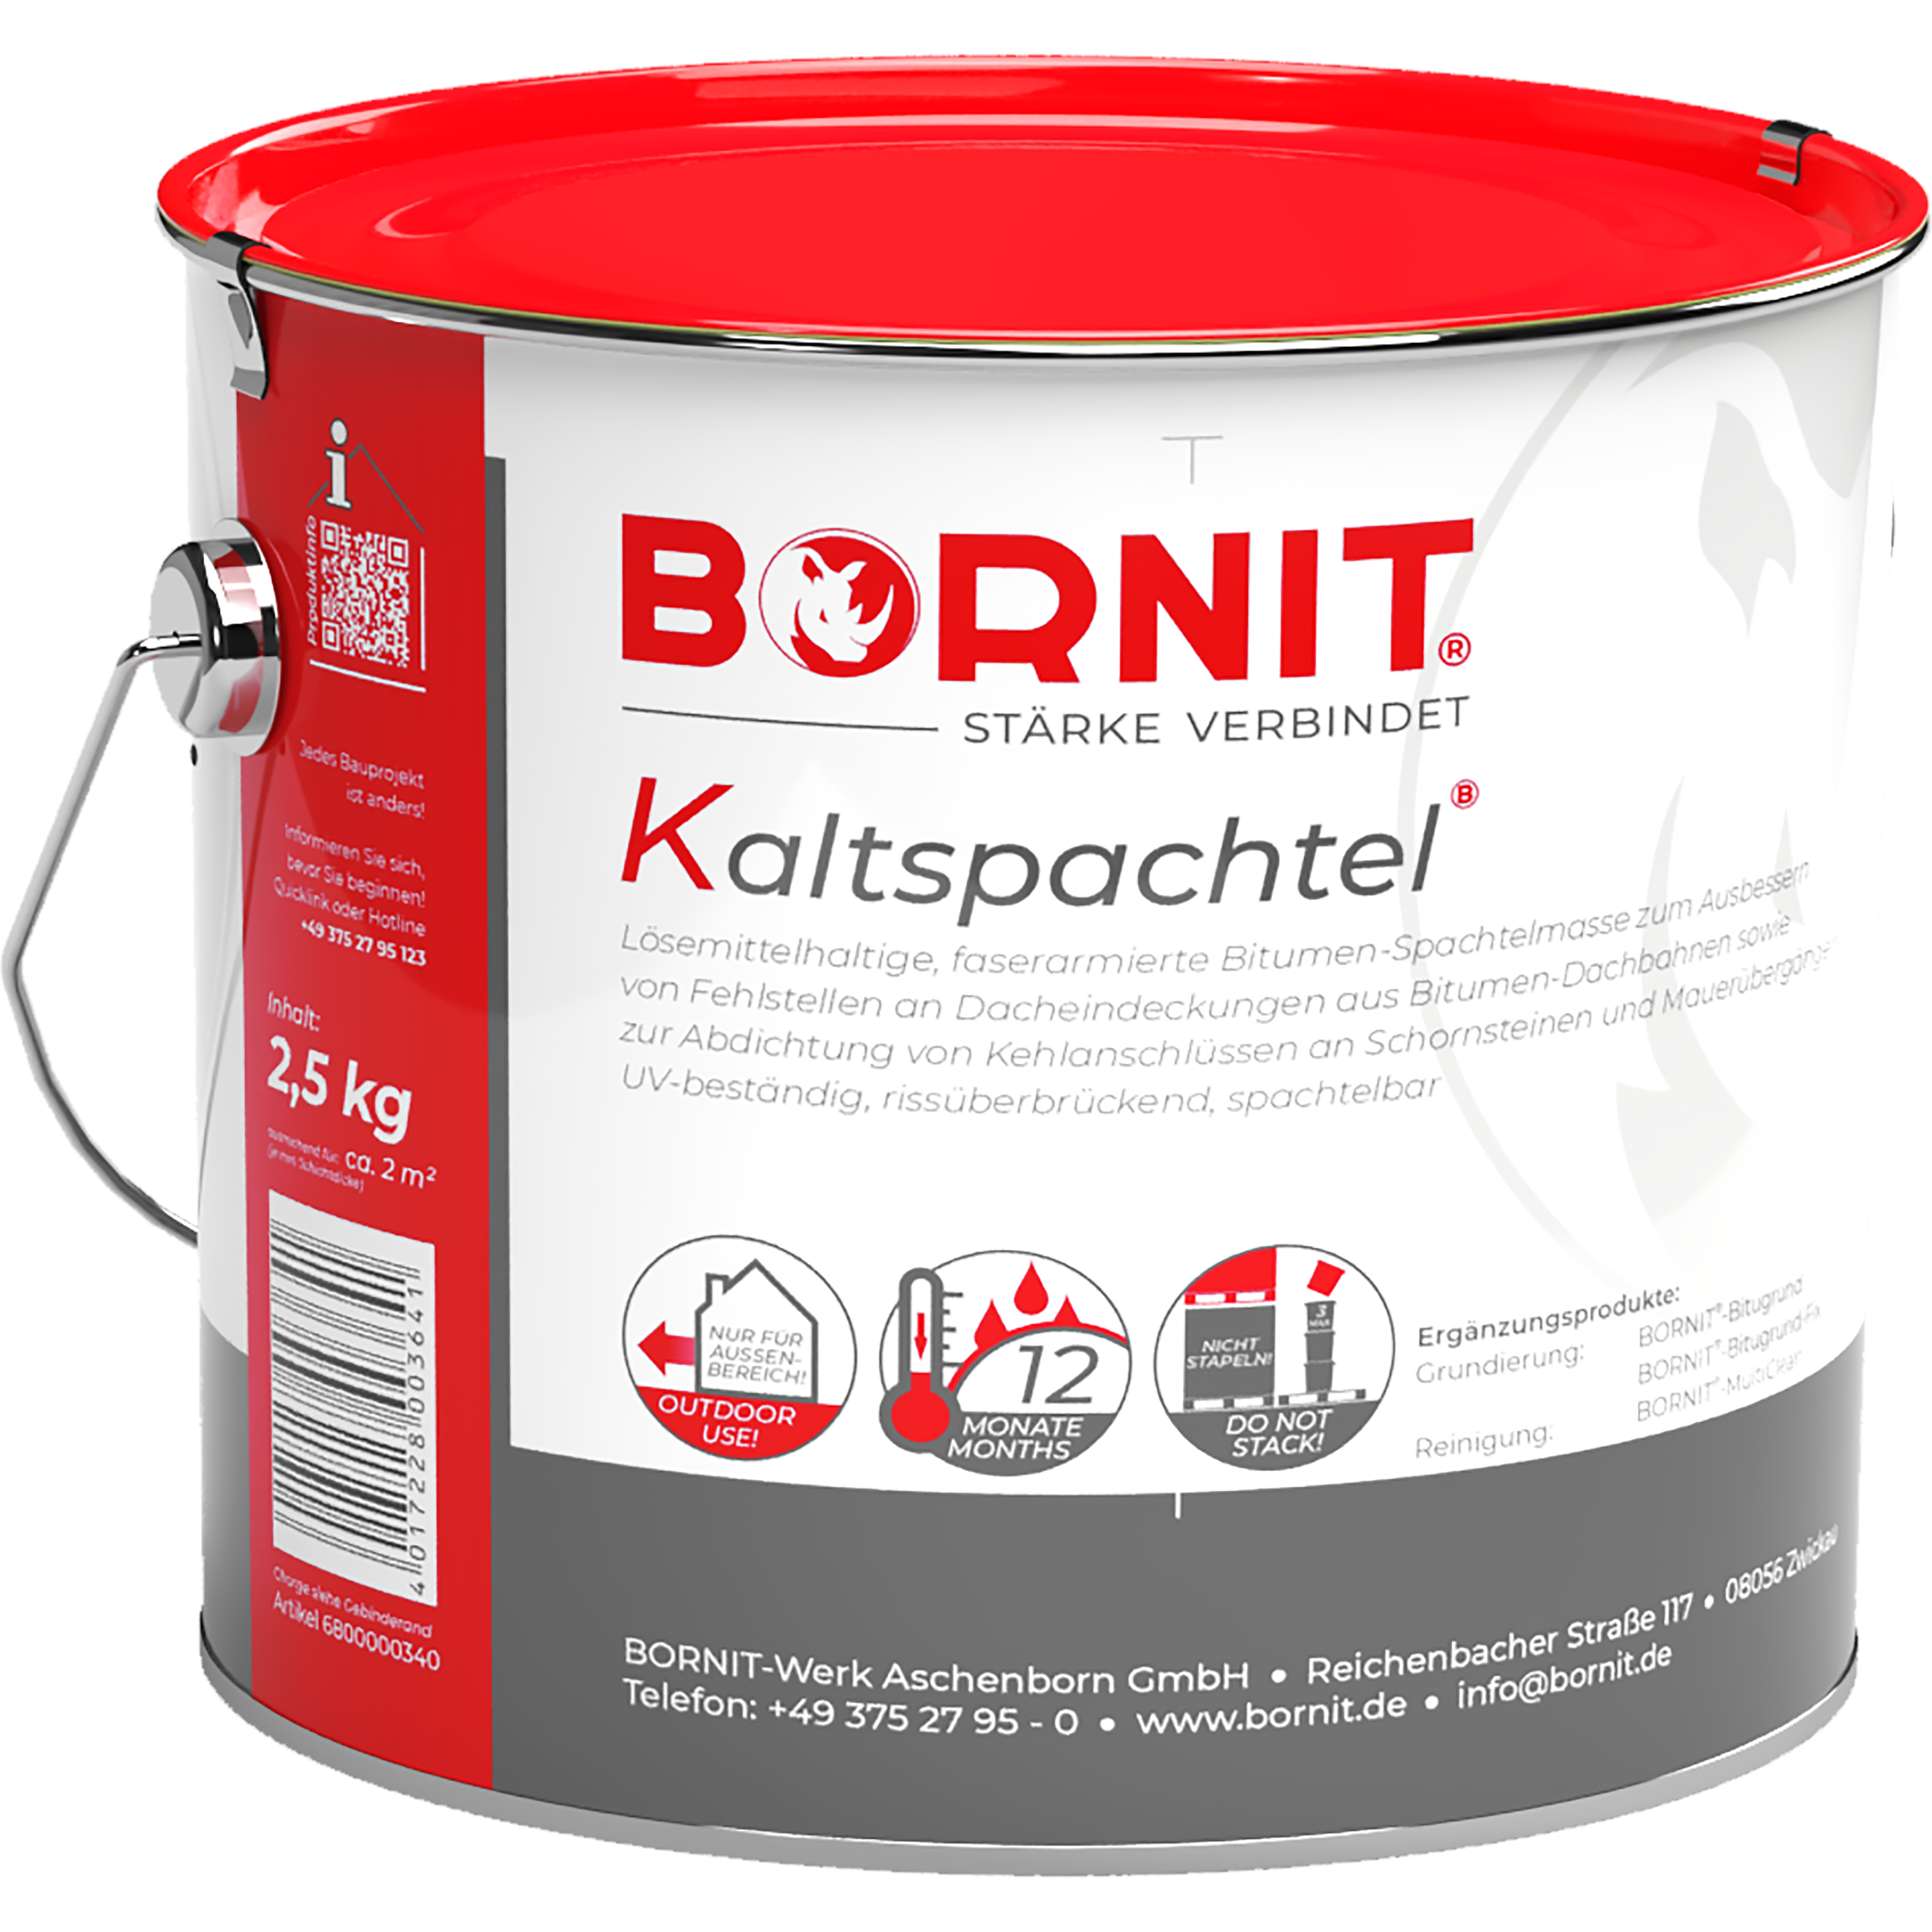 ZL OST Bornit Kaltspachtel 2,5kg 